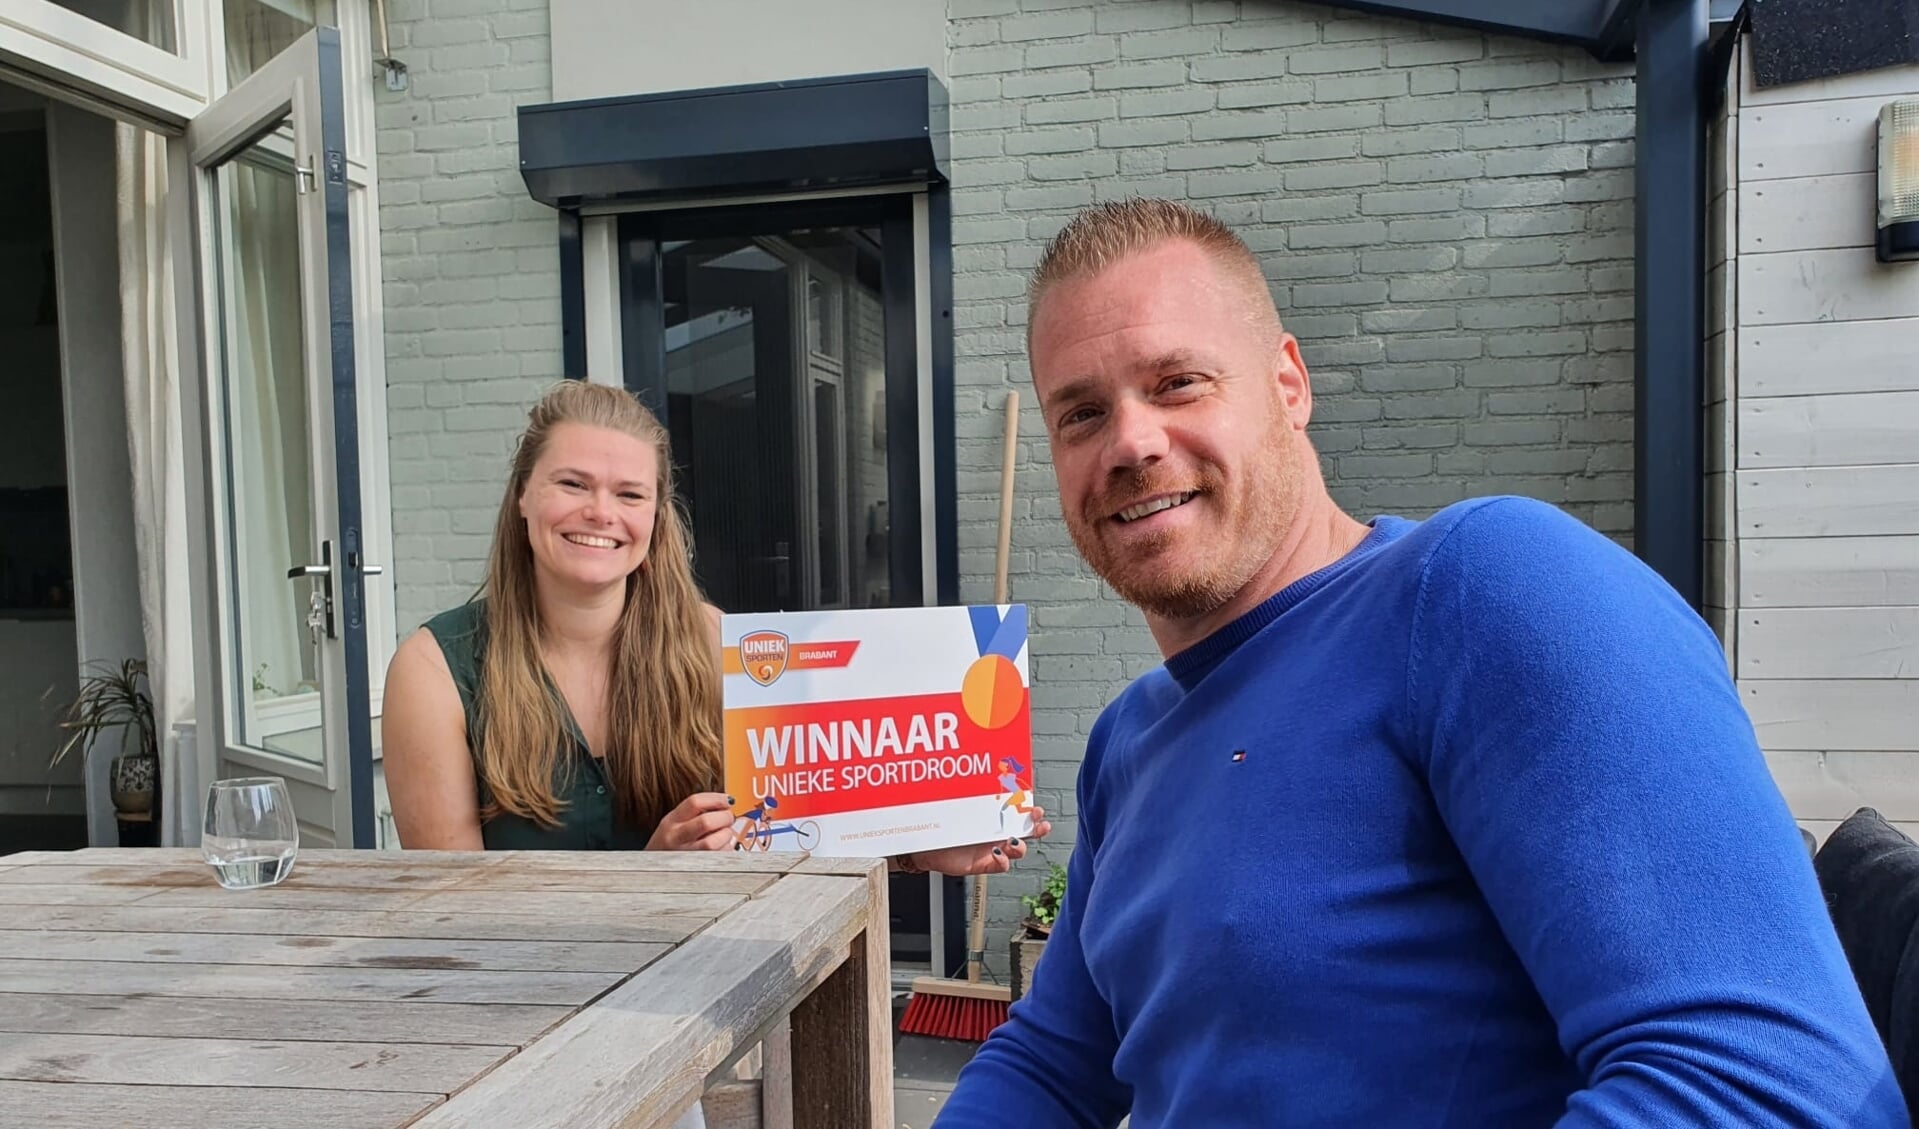 Maikel Scheffers bracht onlangs een bezoek aan Gwenhwyfar Spil (26) uit Den Bosch om haar het goede nieuws te brengen. Gwen hoopt binnenkort een eigen zitvolleybalteam in Den Bosch op te kunnen starten. 